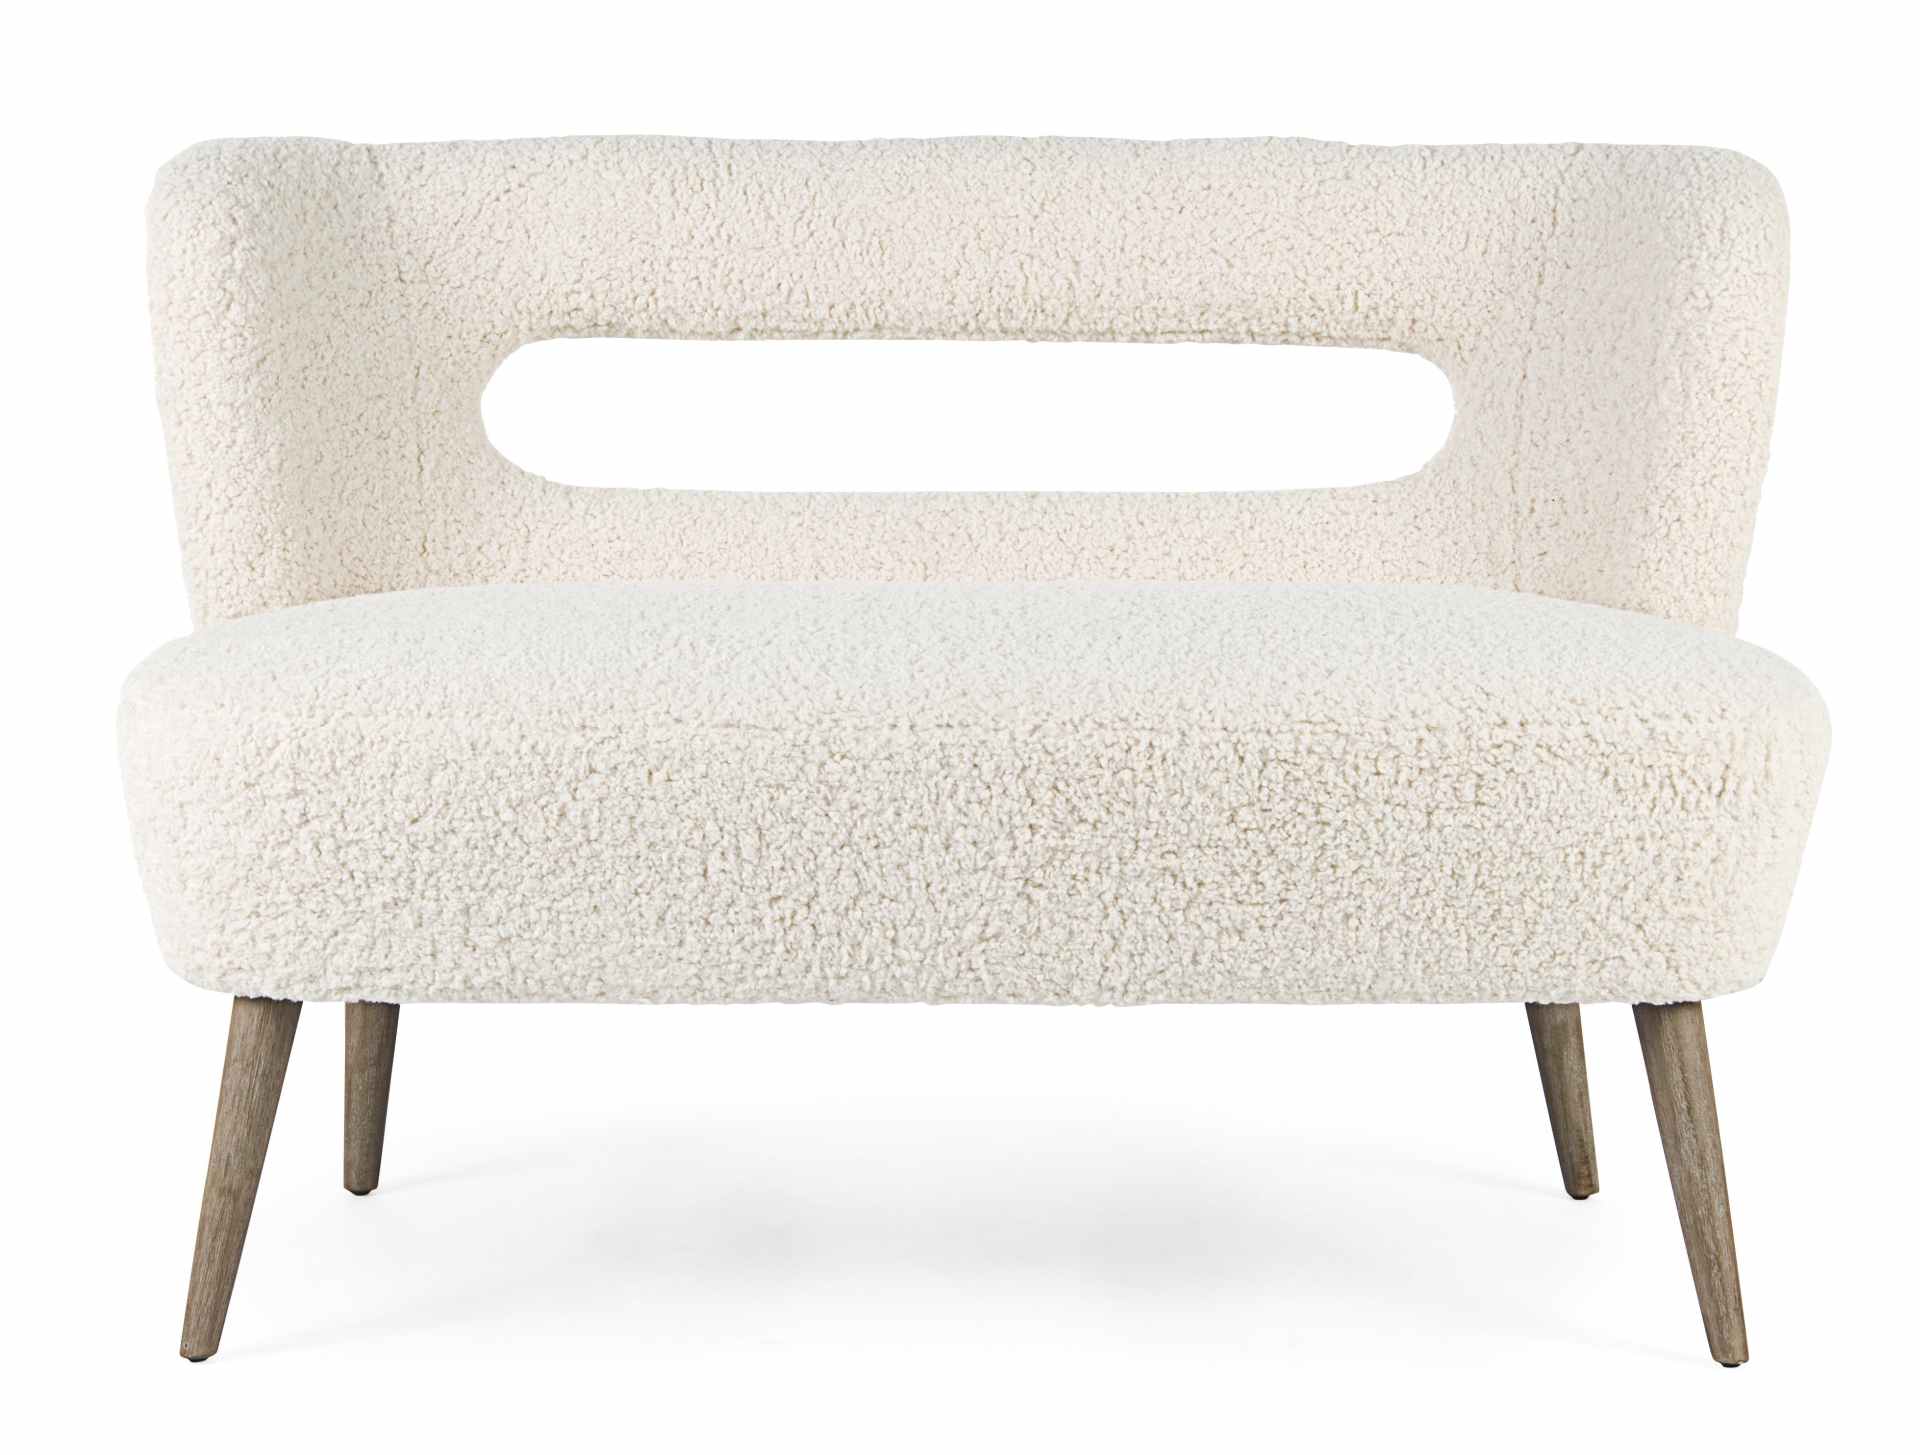 Das Sofa Cortina überzeugt mit seinem modernen Design. Gefertigt wurde es aus Teddy Stoff, welcher einen weißen Farbton besitzt. Das Gestell ist aus Kiefernholz und hat eine natürliche Farbe. Das Sofa ist in der Ausführung als 2-Sitzer. Die Breite beträgt